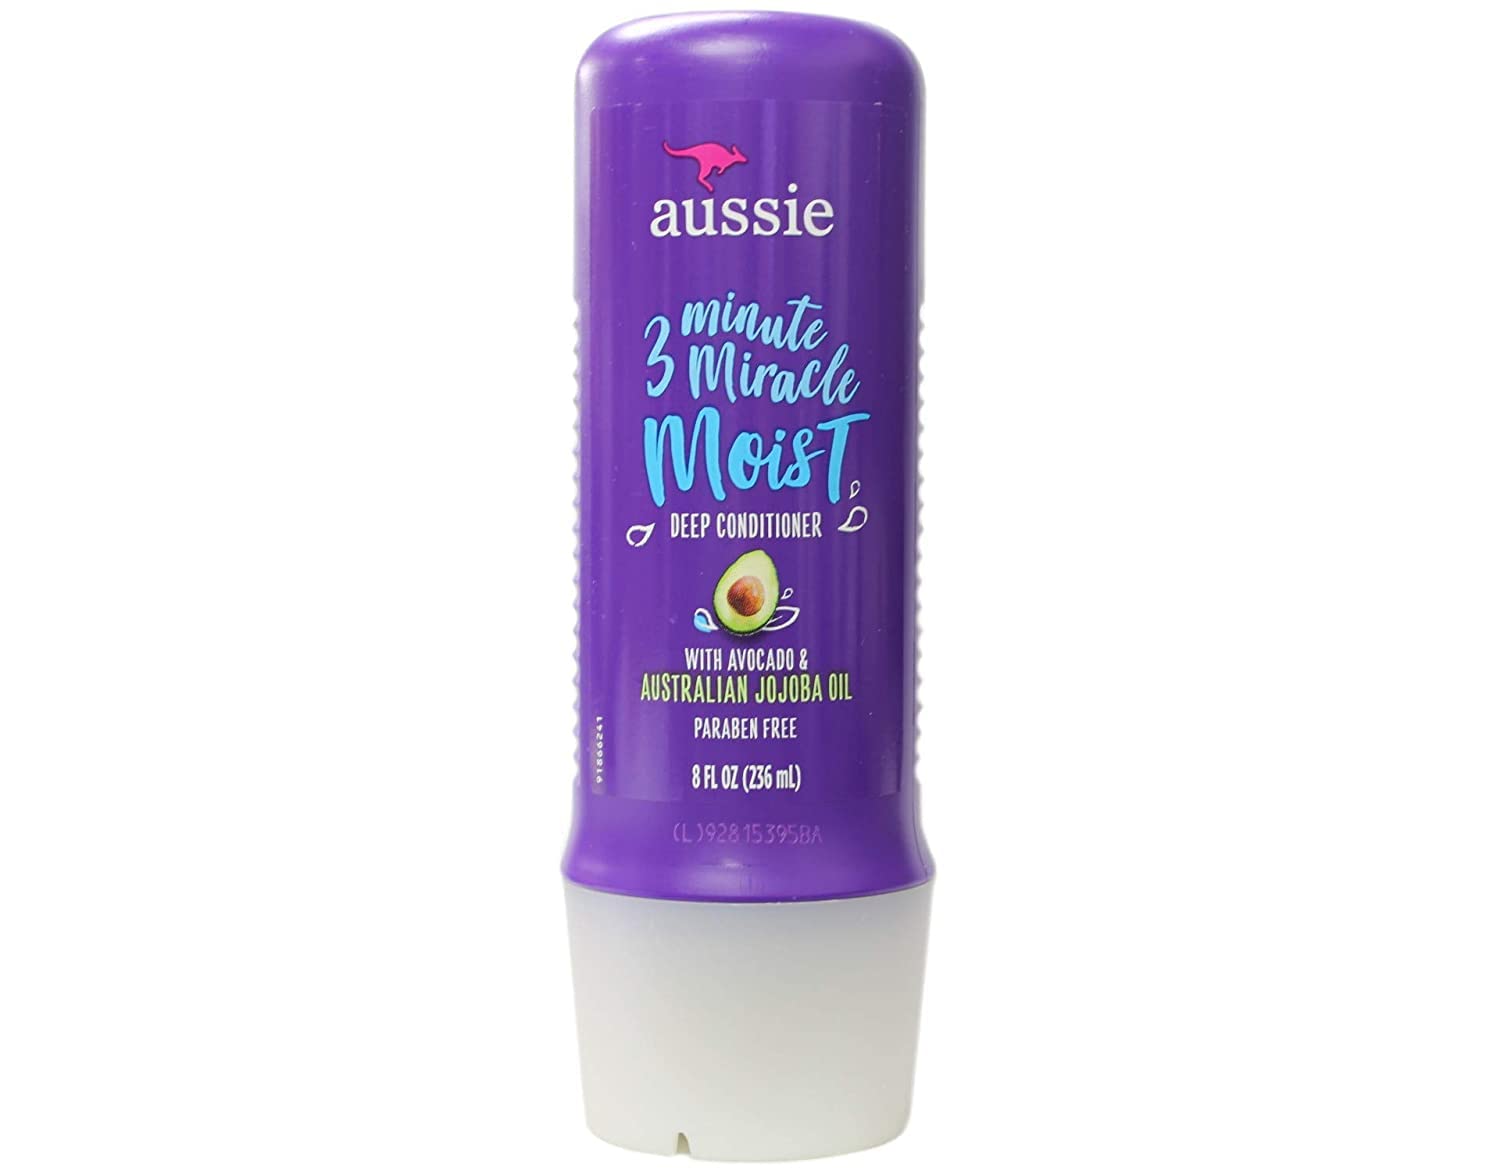 Aussie 3 Minute Miracle Moist Deeeeep Conditioner